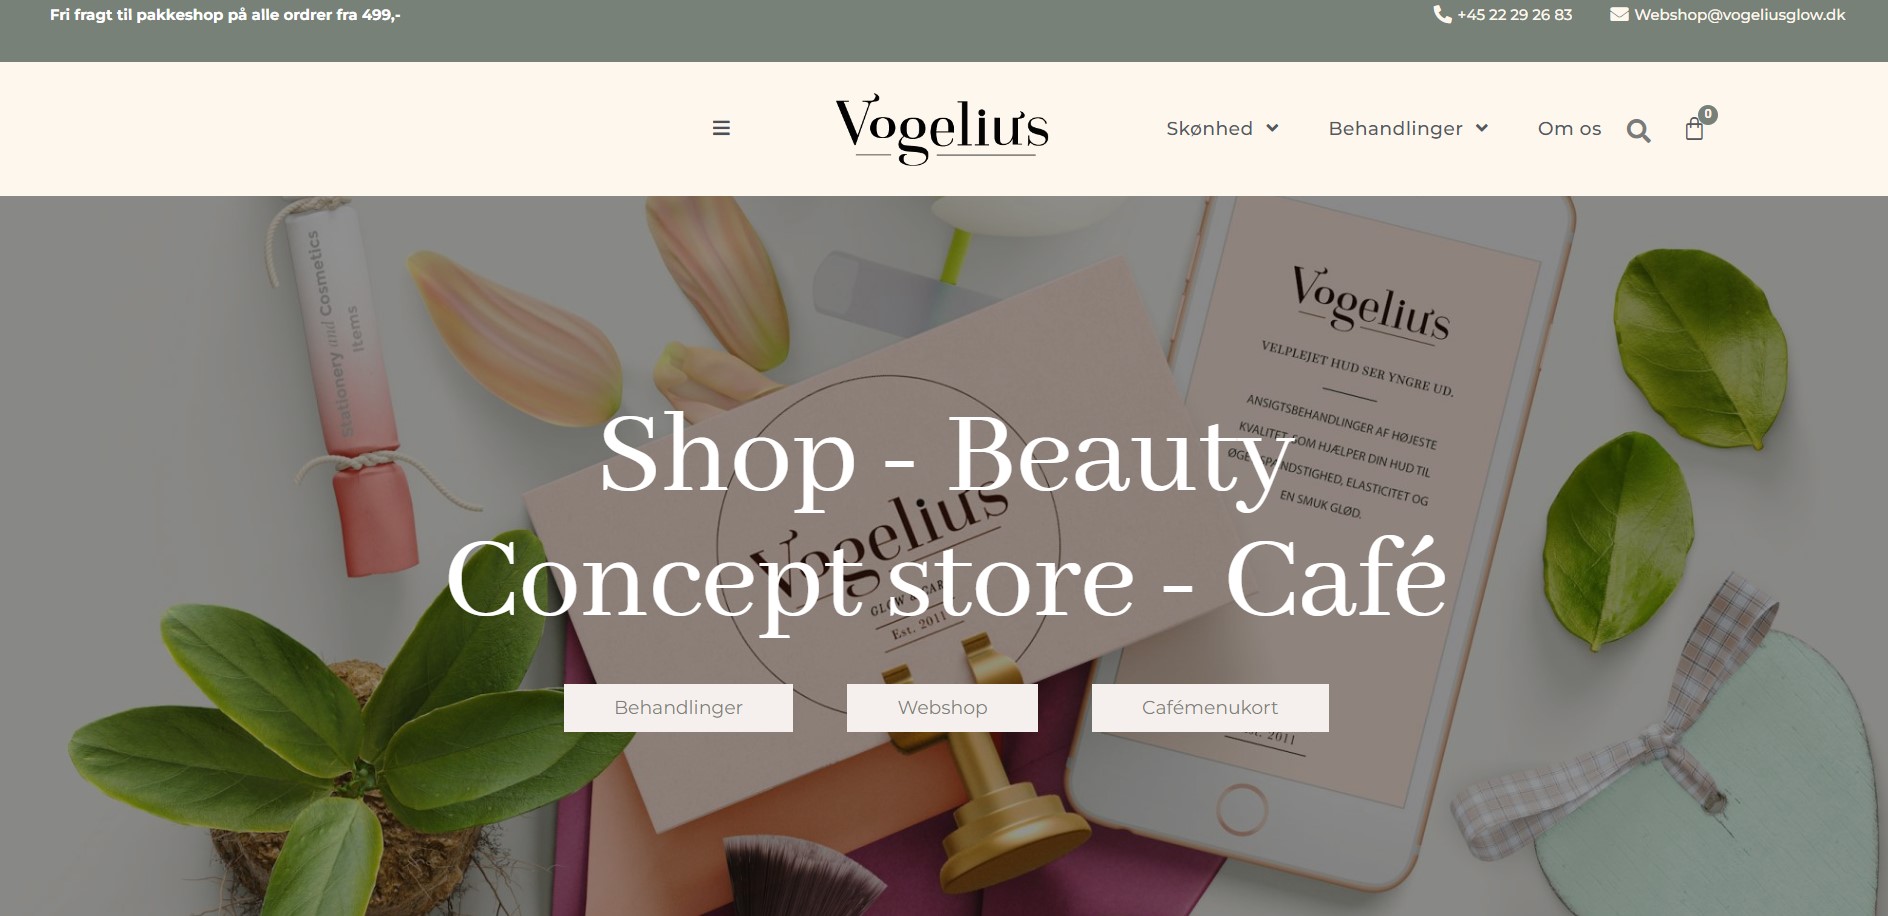 Beauty business branding - Vogelius